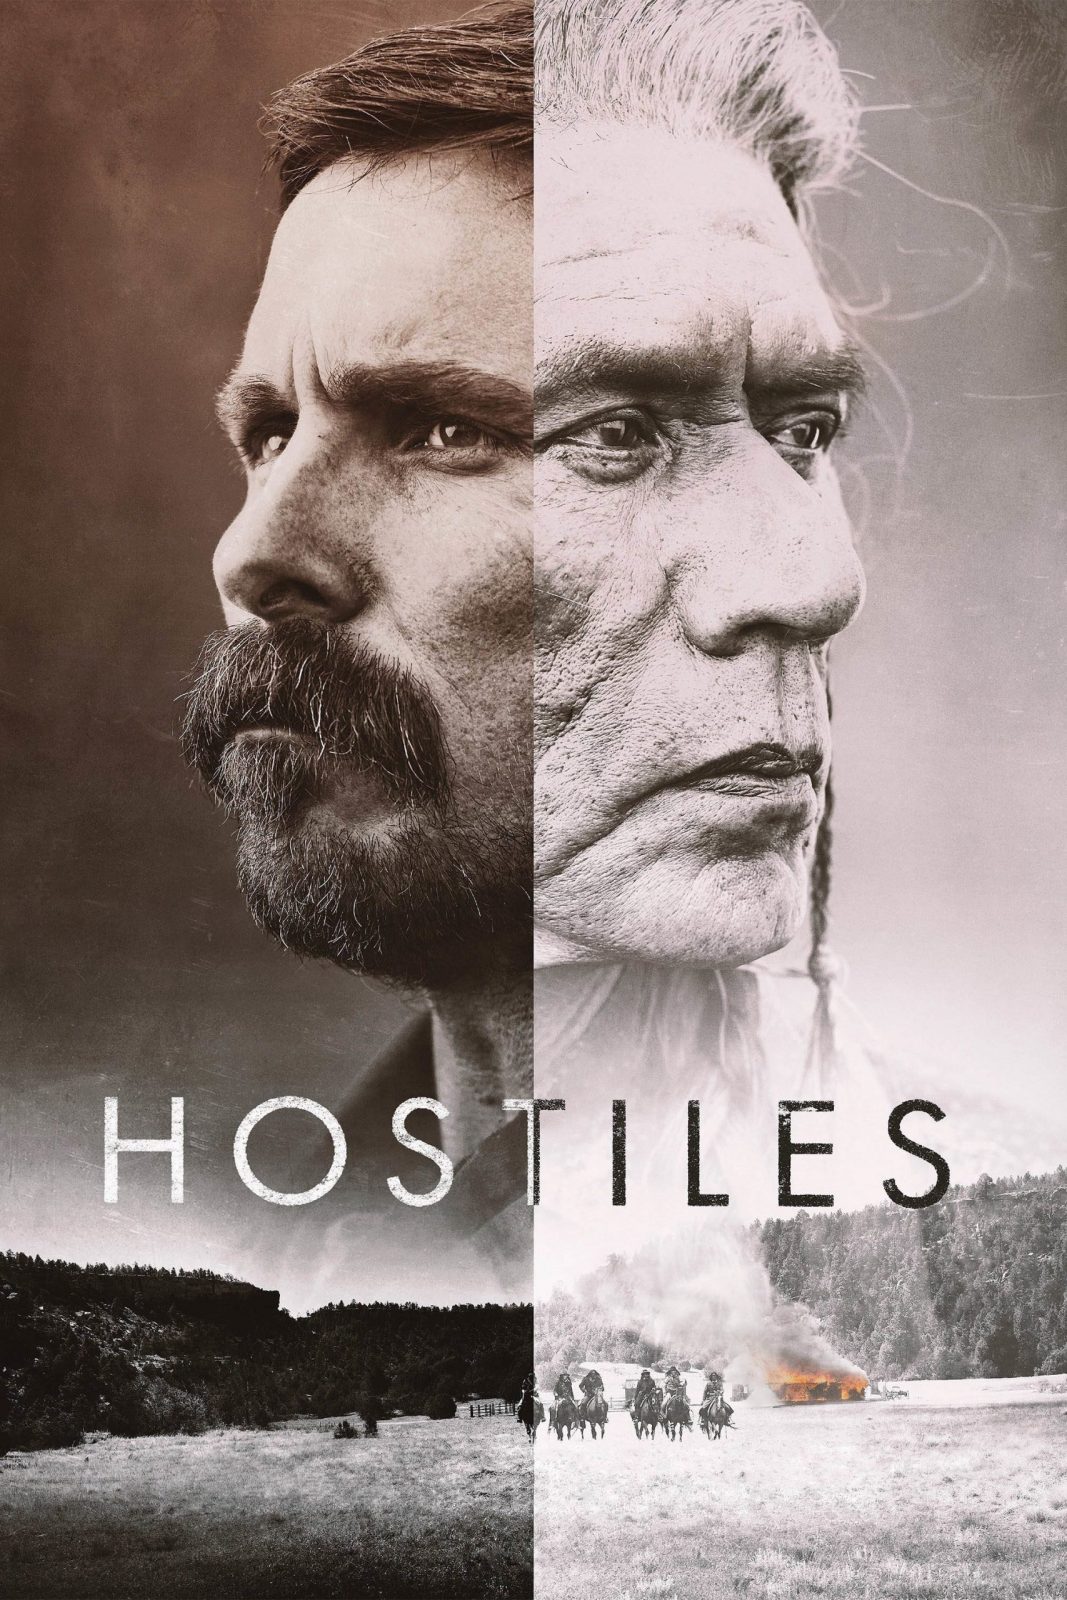 دانلود فیلم Hostiles 2017